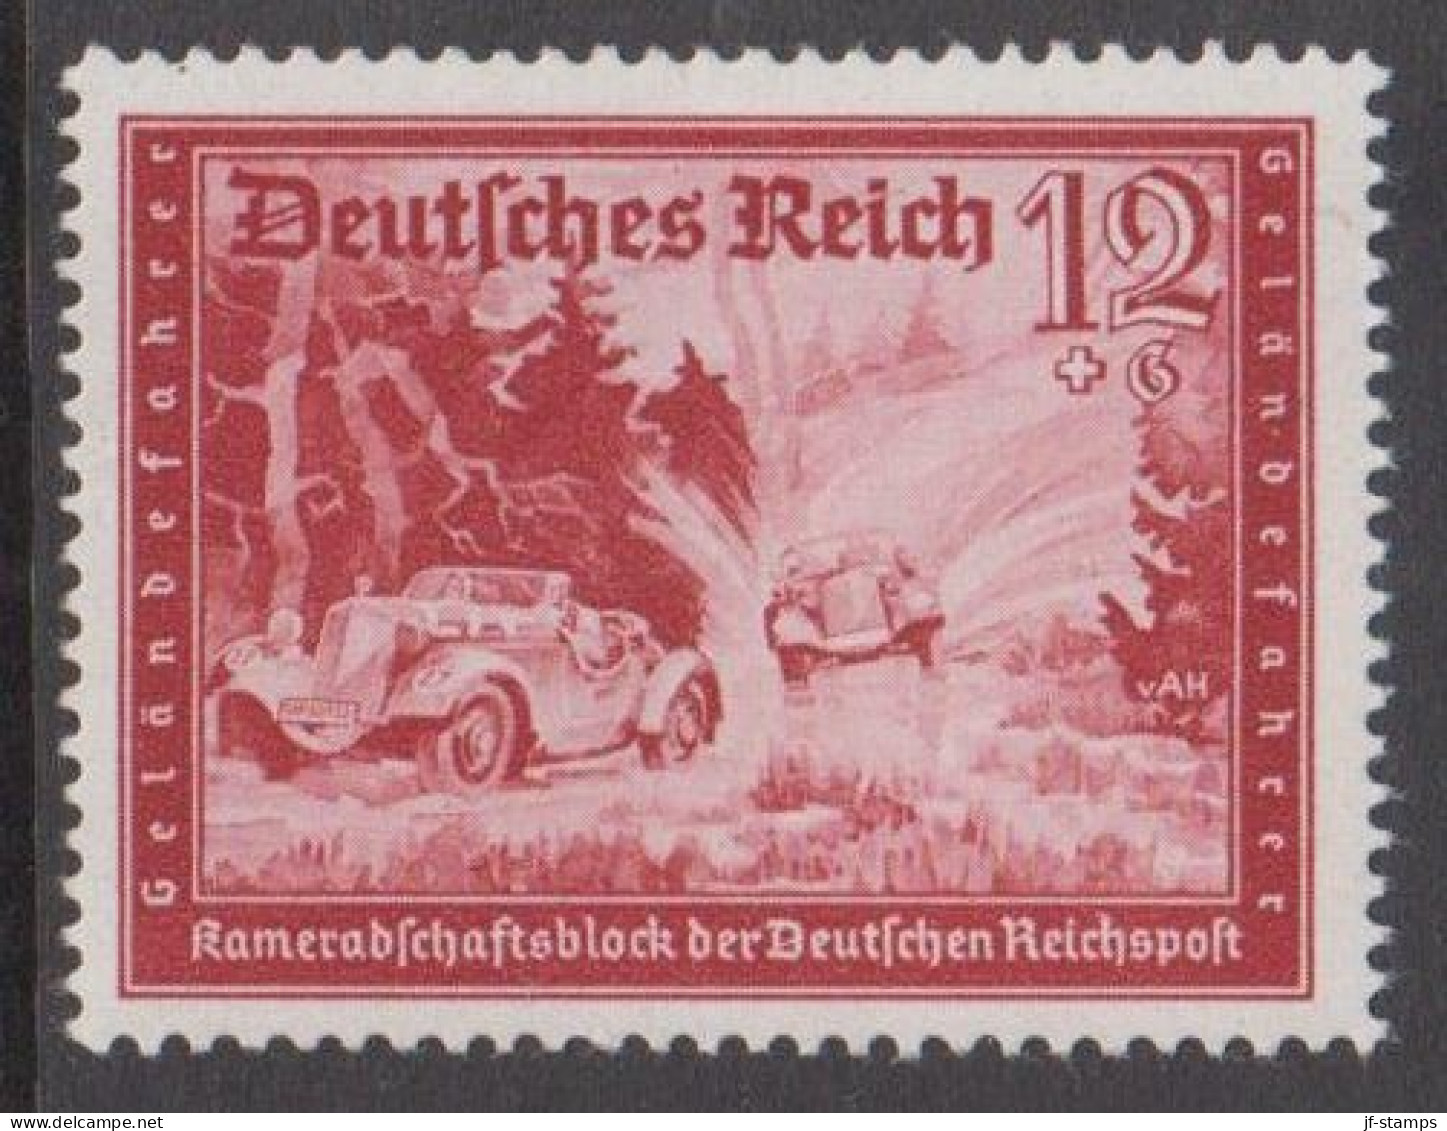 1939. DEUTSCHES REICH. Kameradschaftsblock Der Deutschen Reichspost 12+6 Pf Hinged. (Michel 708) - JF539169 - Unused Stamps